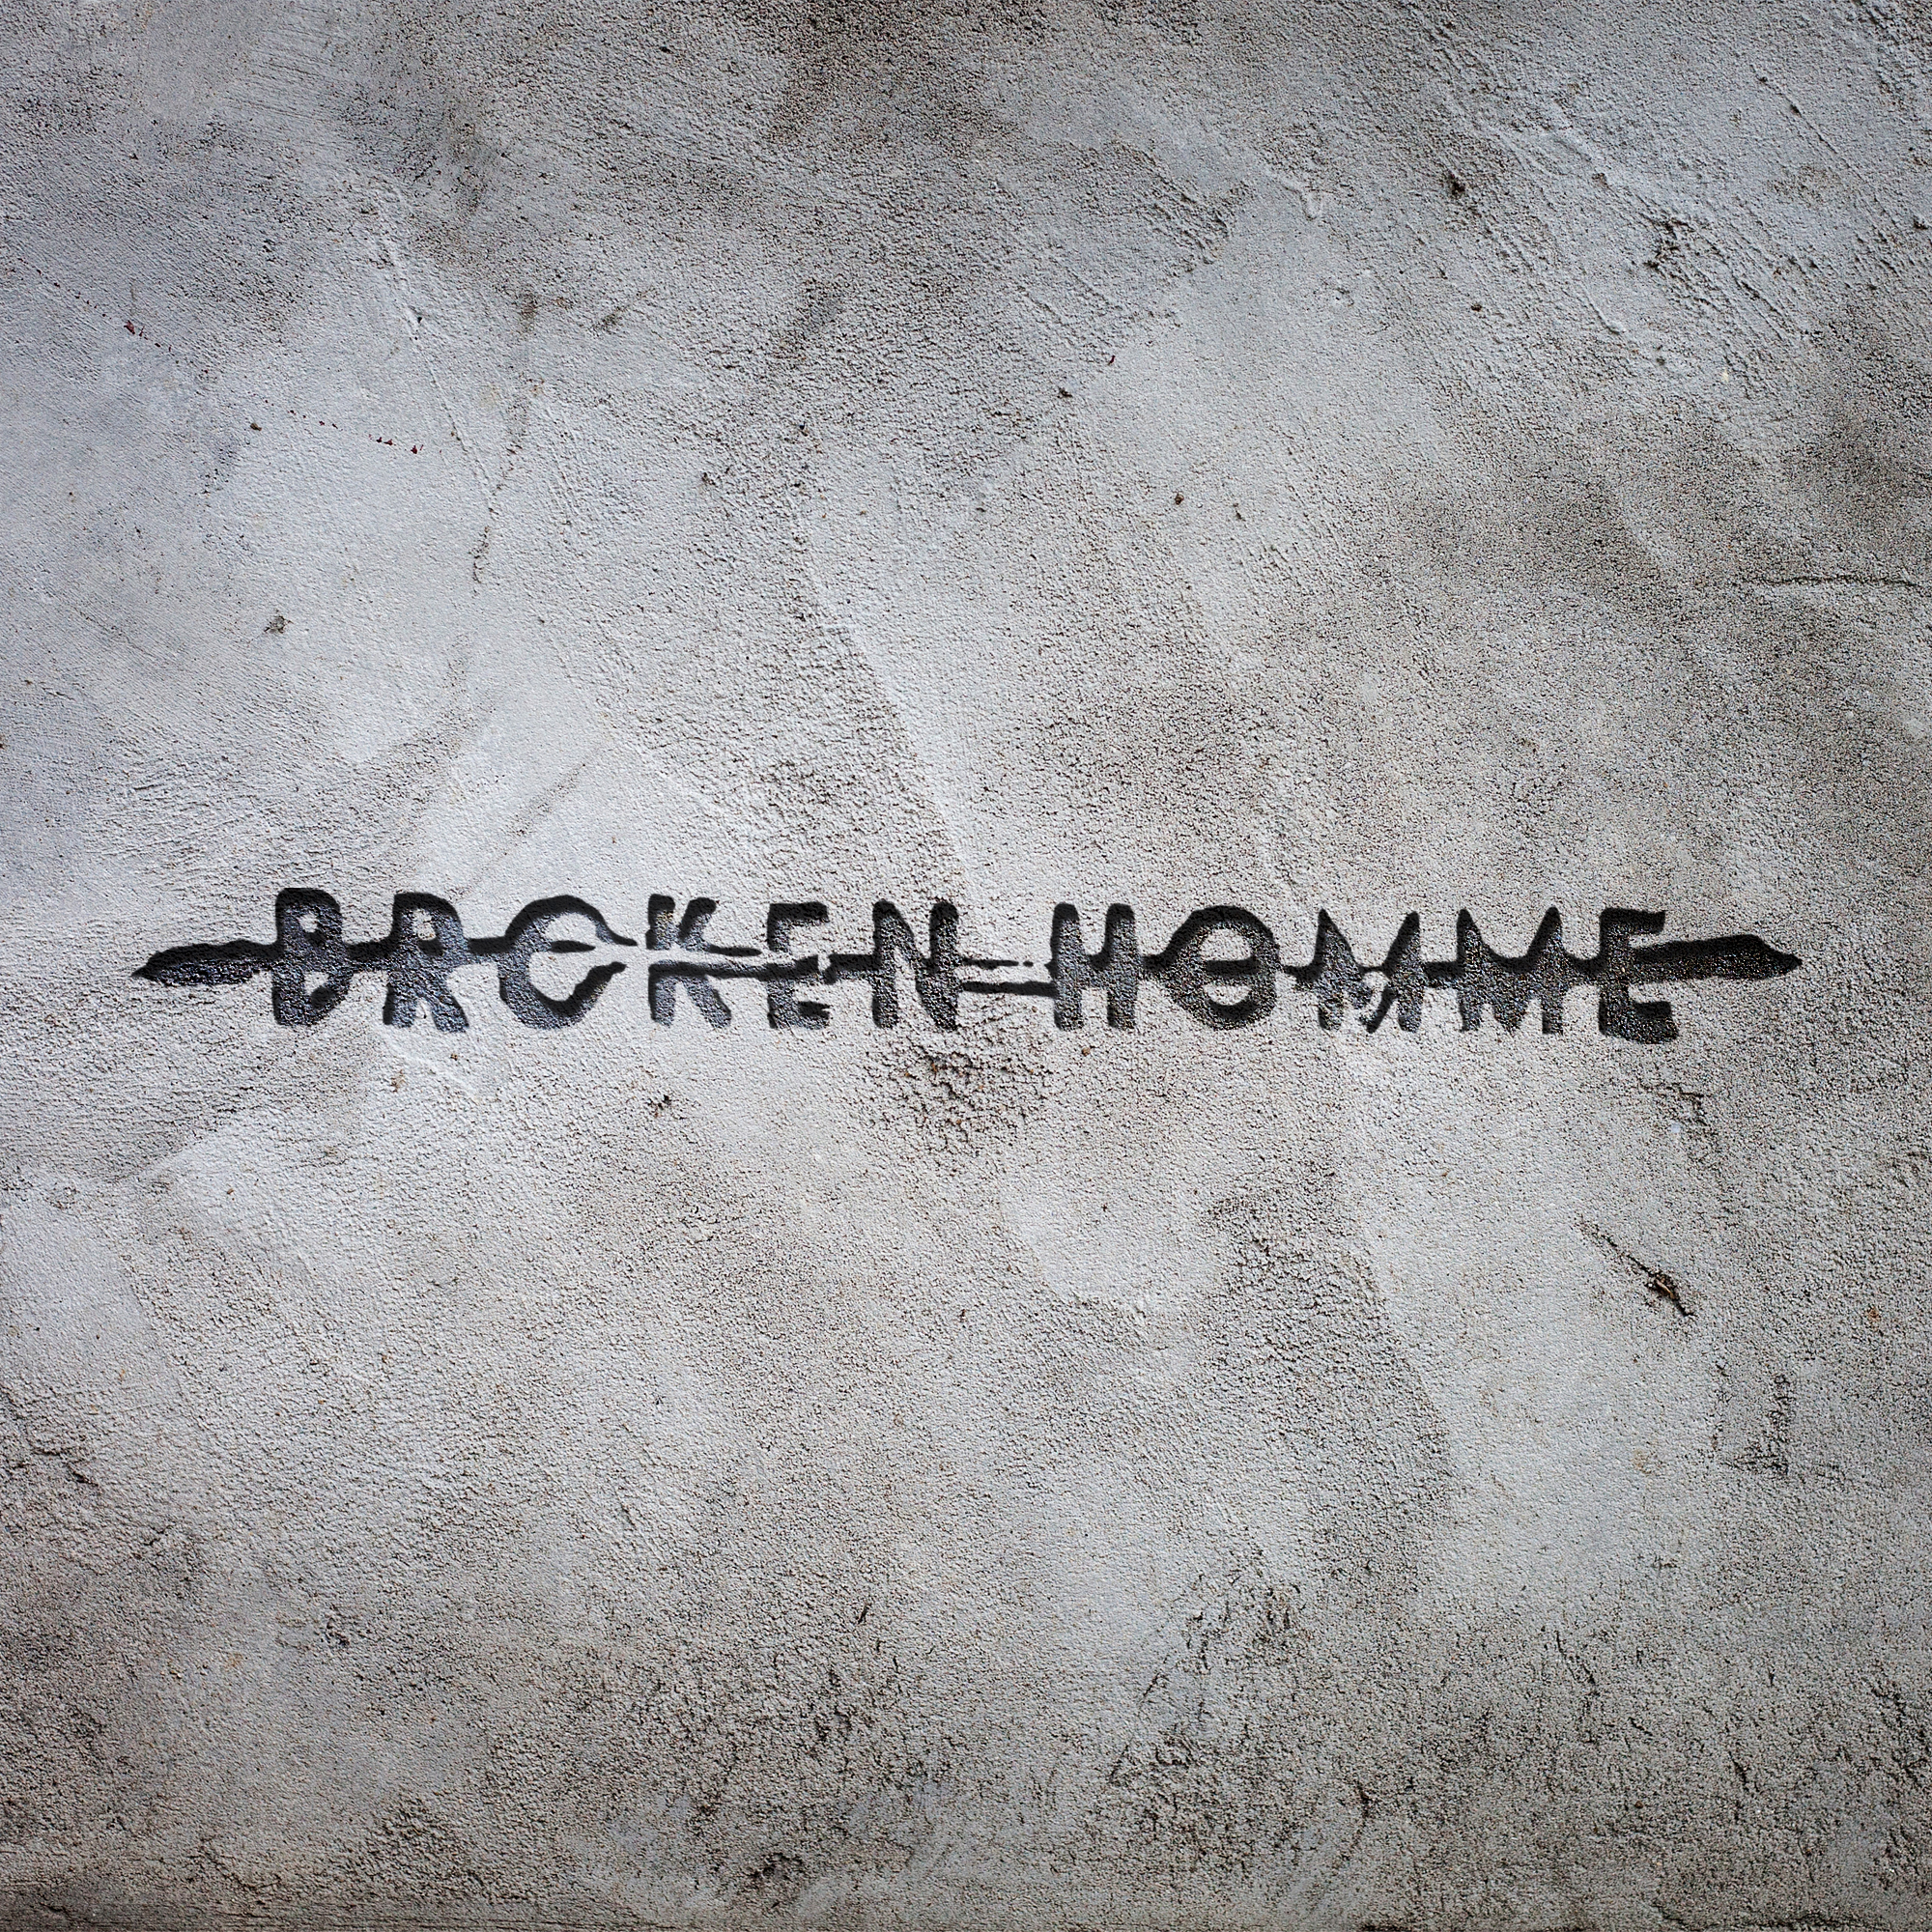 BrokenHomme